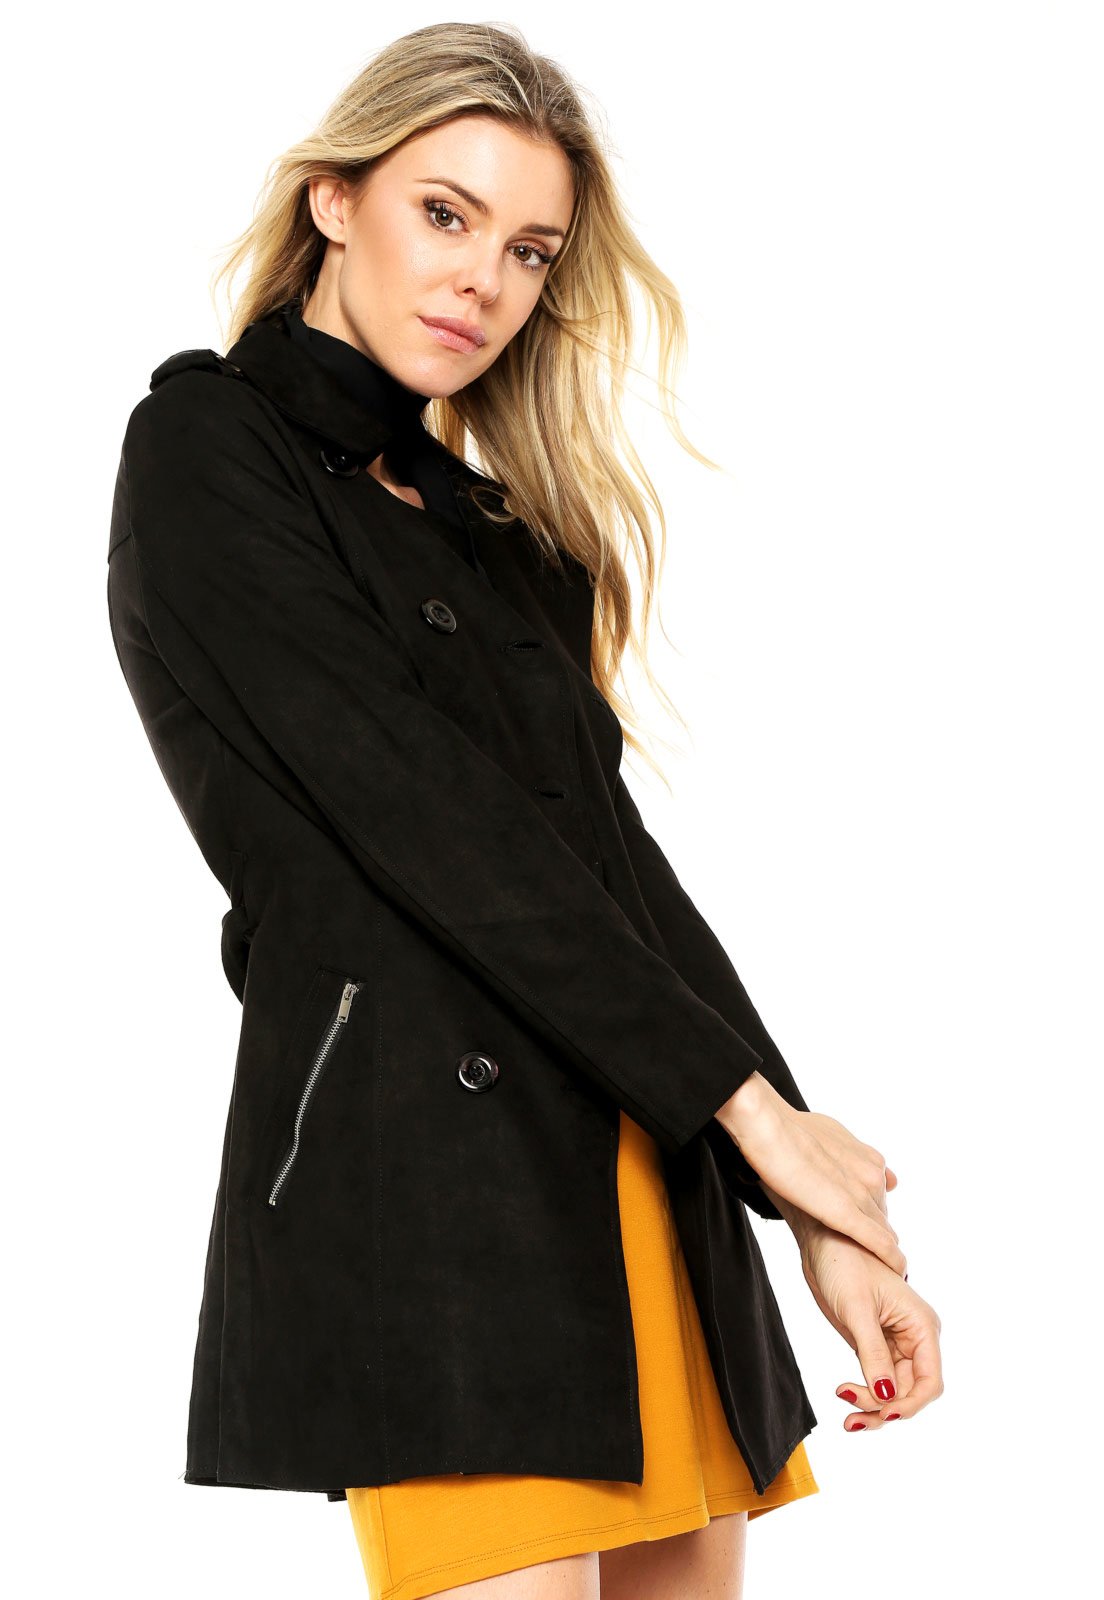 casaco trench coat feminino preto